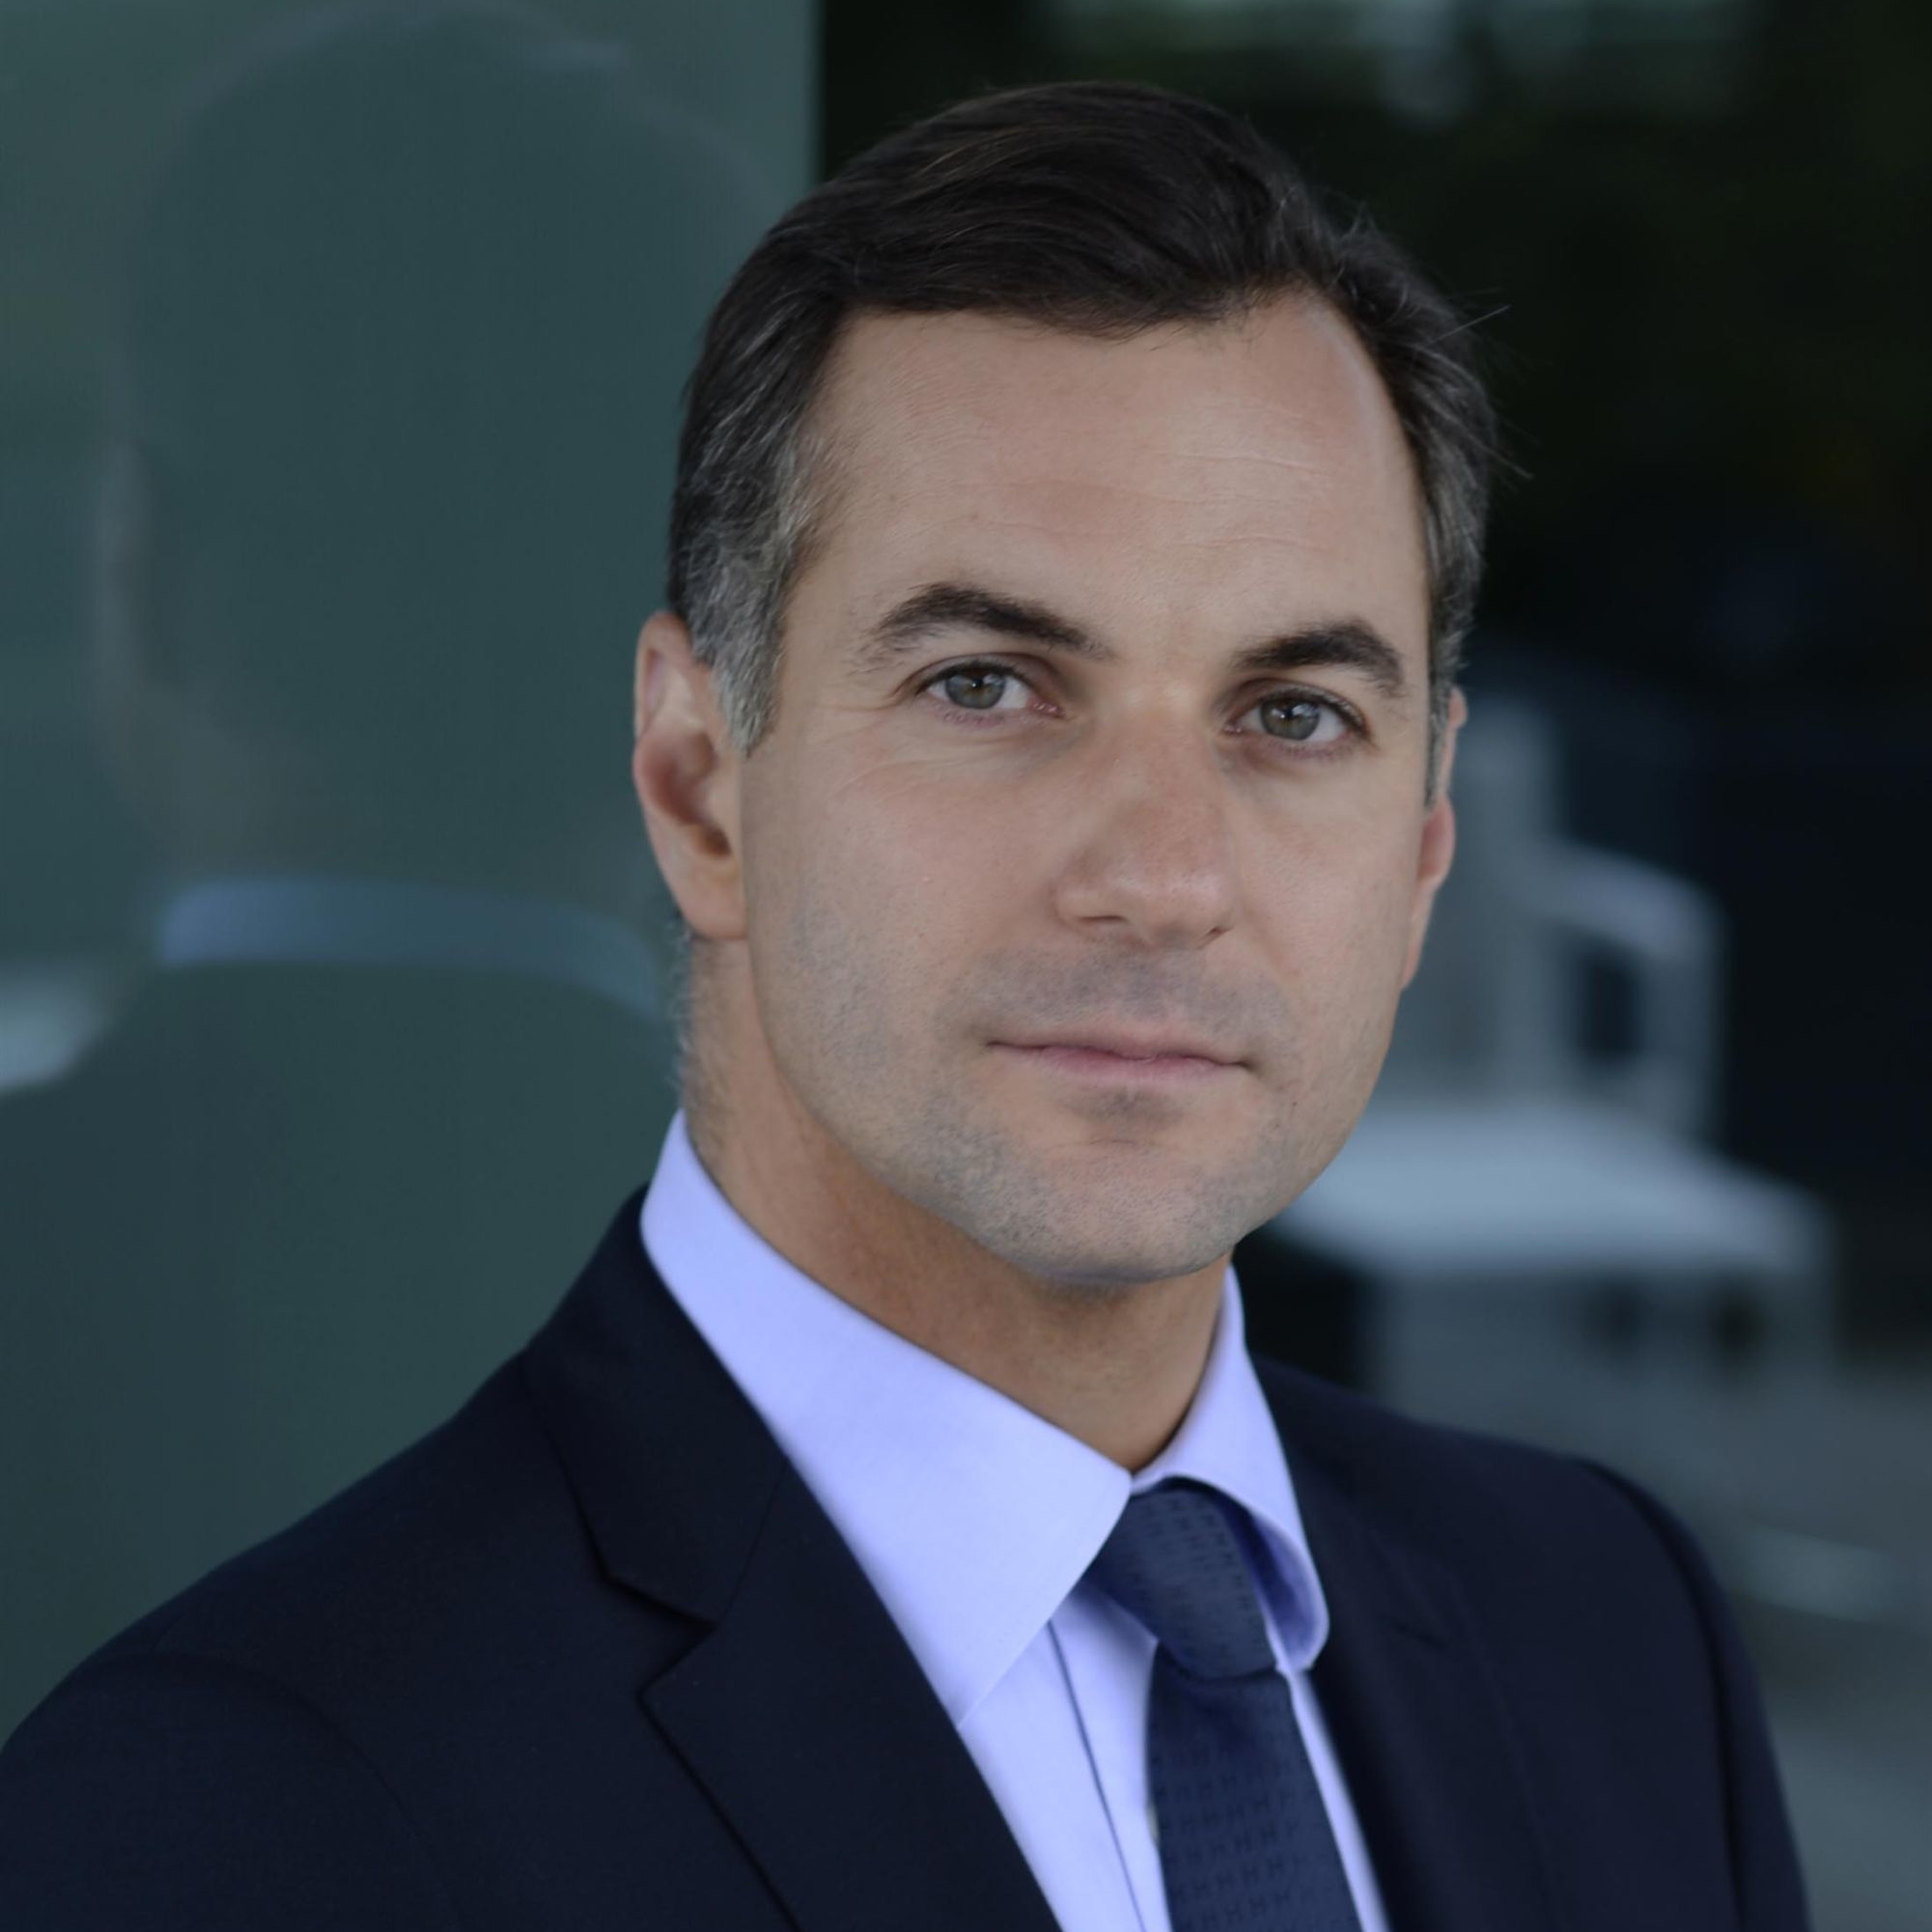 L’interview de Nicolas Namias, directeur général Finance et Stratégie du Groupe BPCE : « Il n’y a pas de meilleur gage de transformation et de performance que celui d’être constamment challengé, confronté dans ses points de vue »